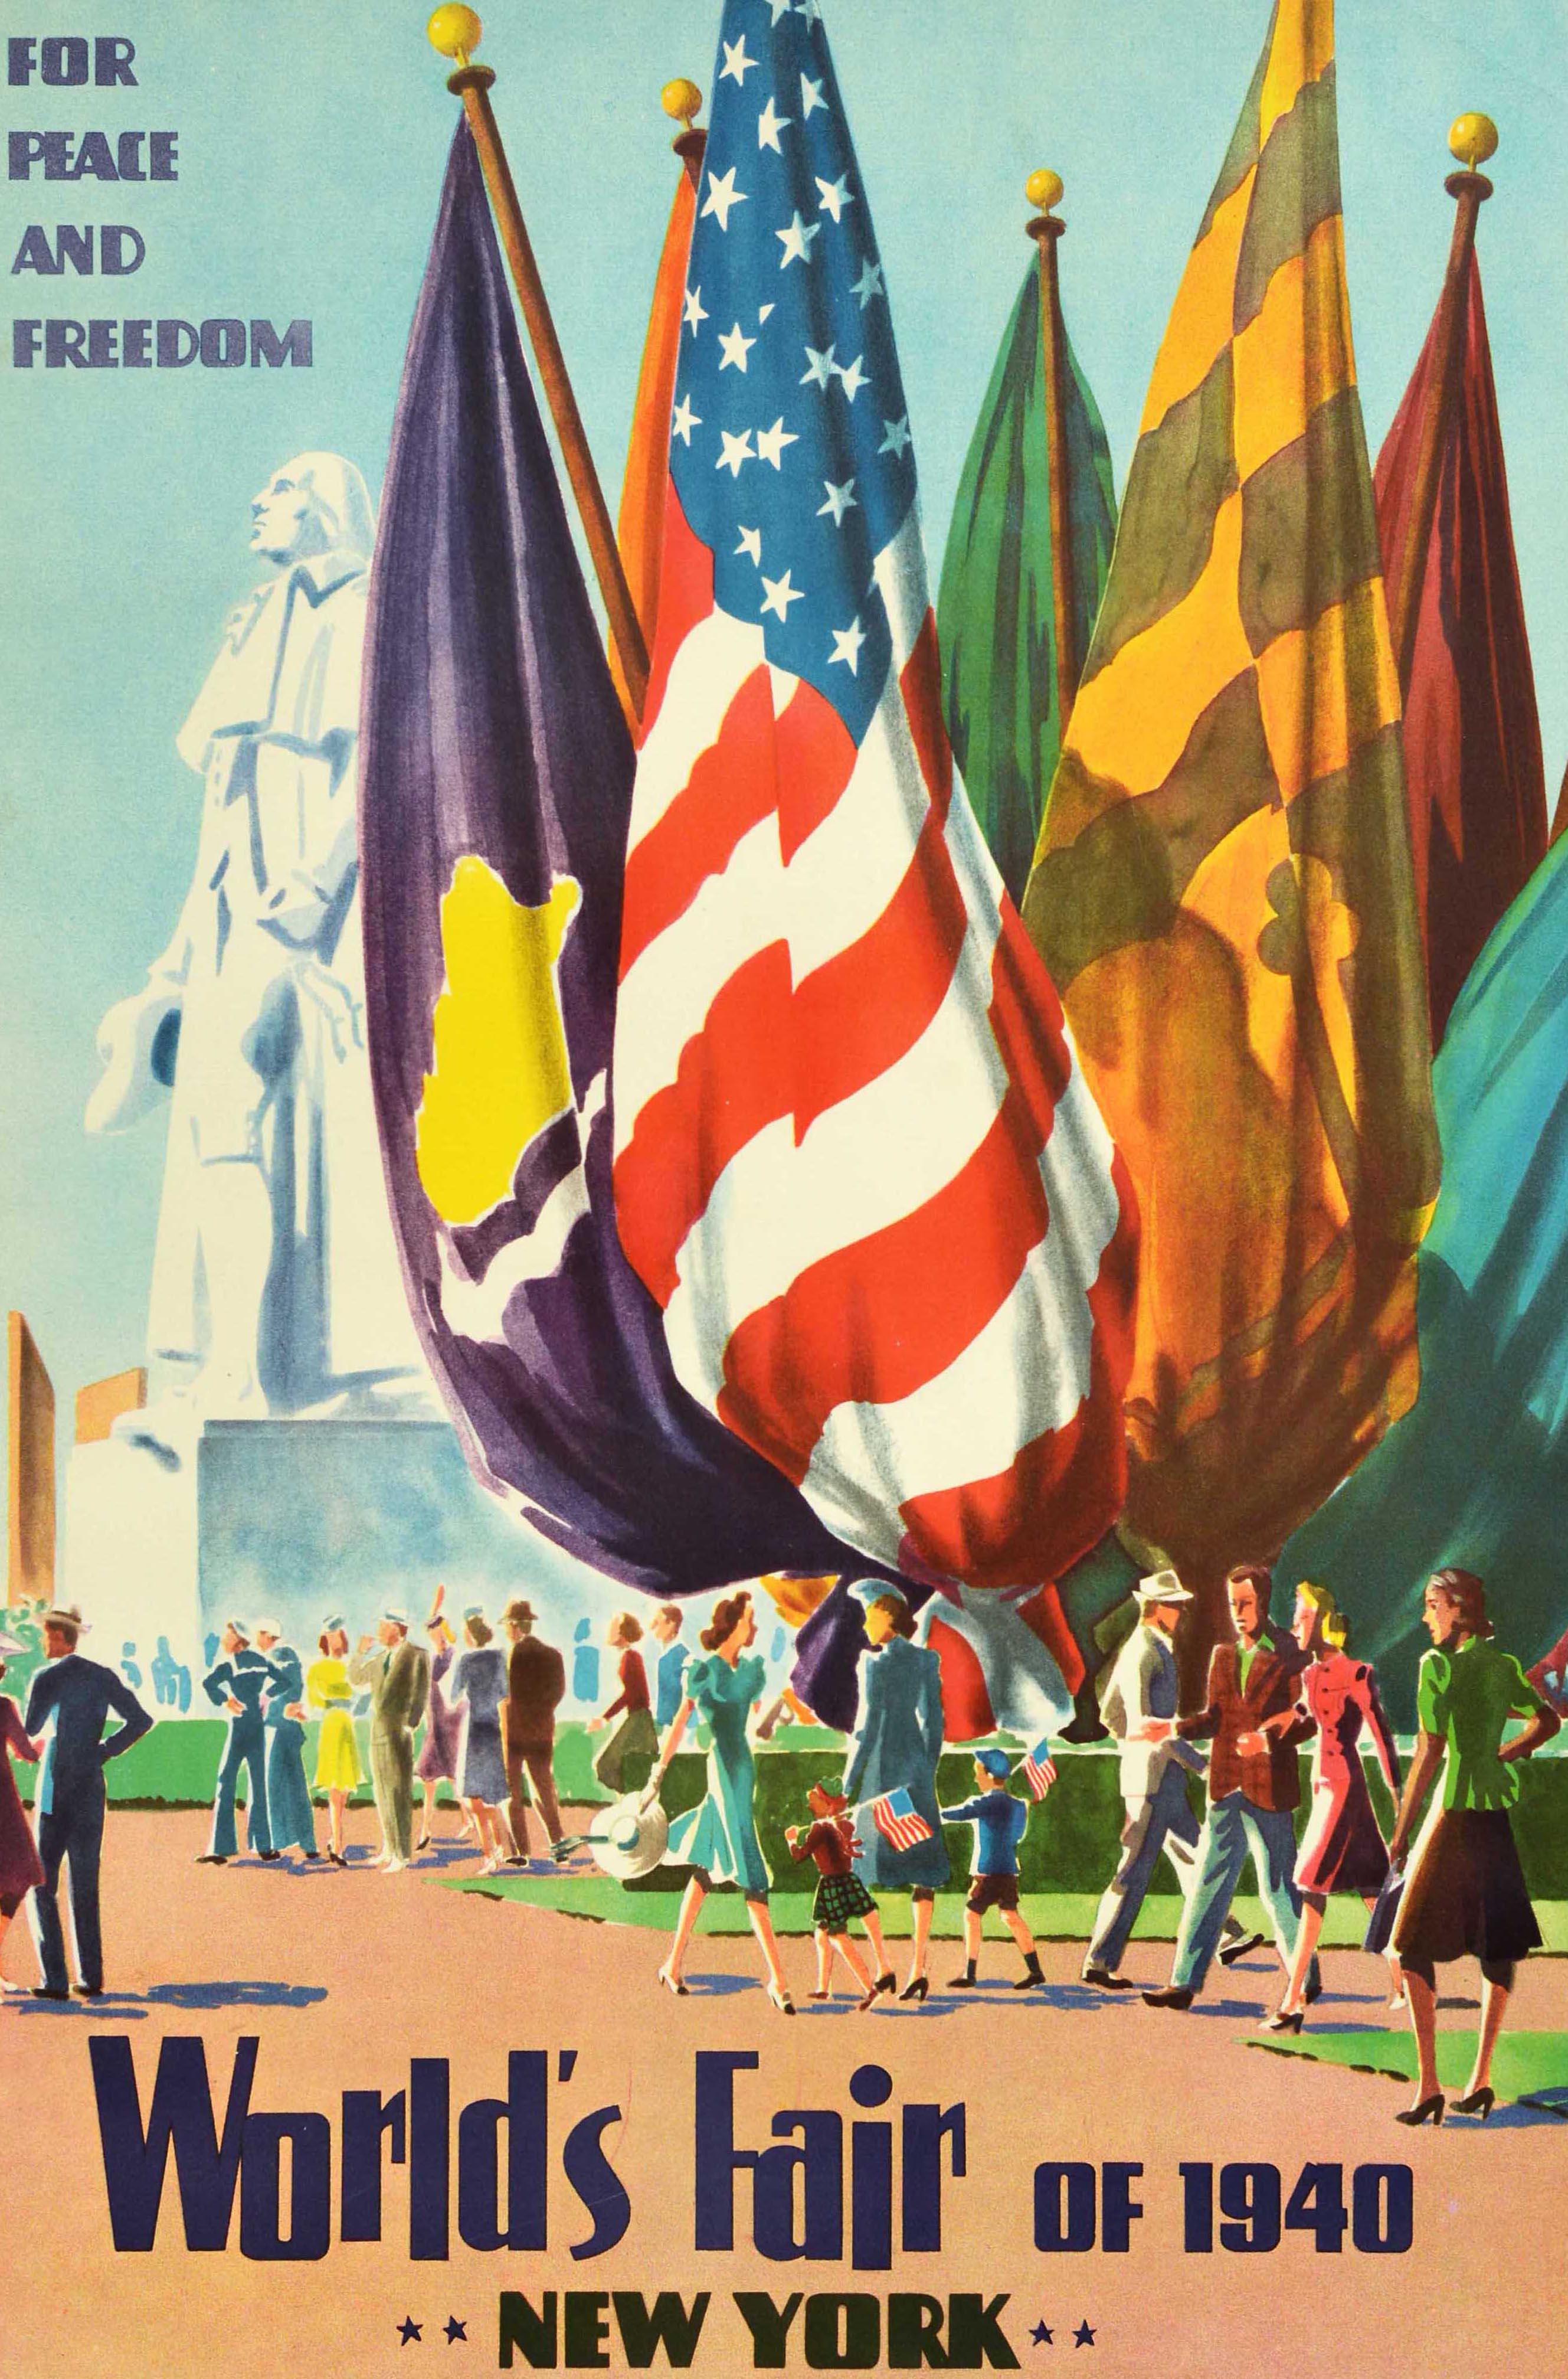 Affiche publicitaire originale de voyage vintage - Exposition universelle de 1940 à New York pour la paix et la liberté - présentant une illustration colorée de personnes marchant près d'un étalage de drapeaux avec deux enfants tenant des drapeaux